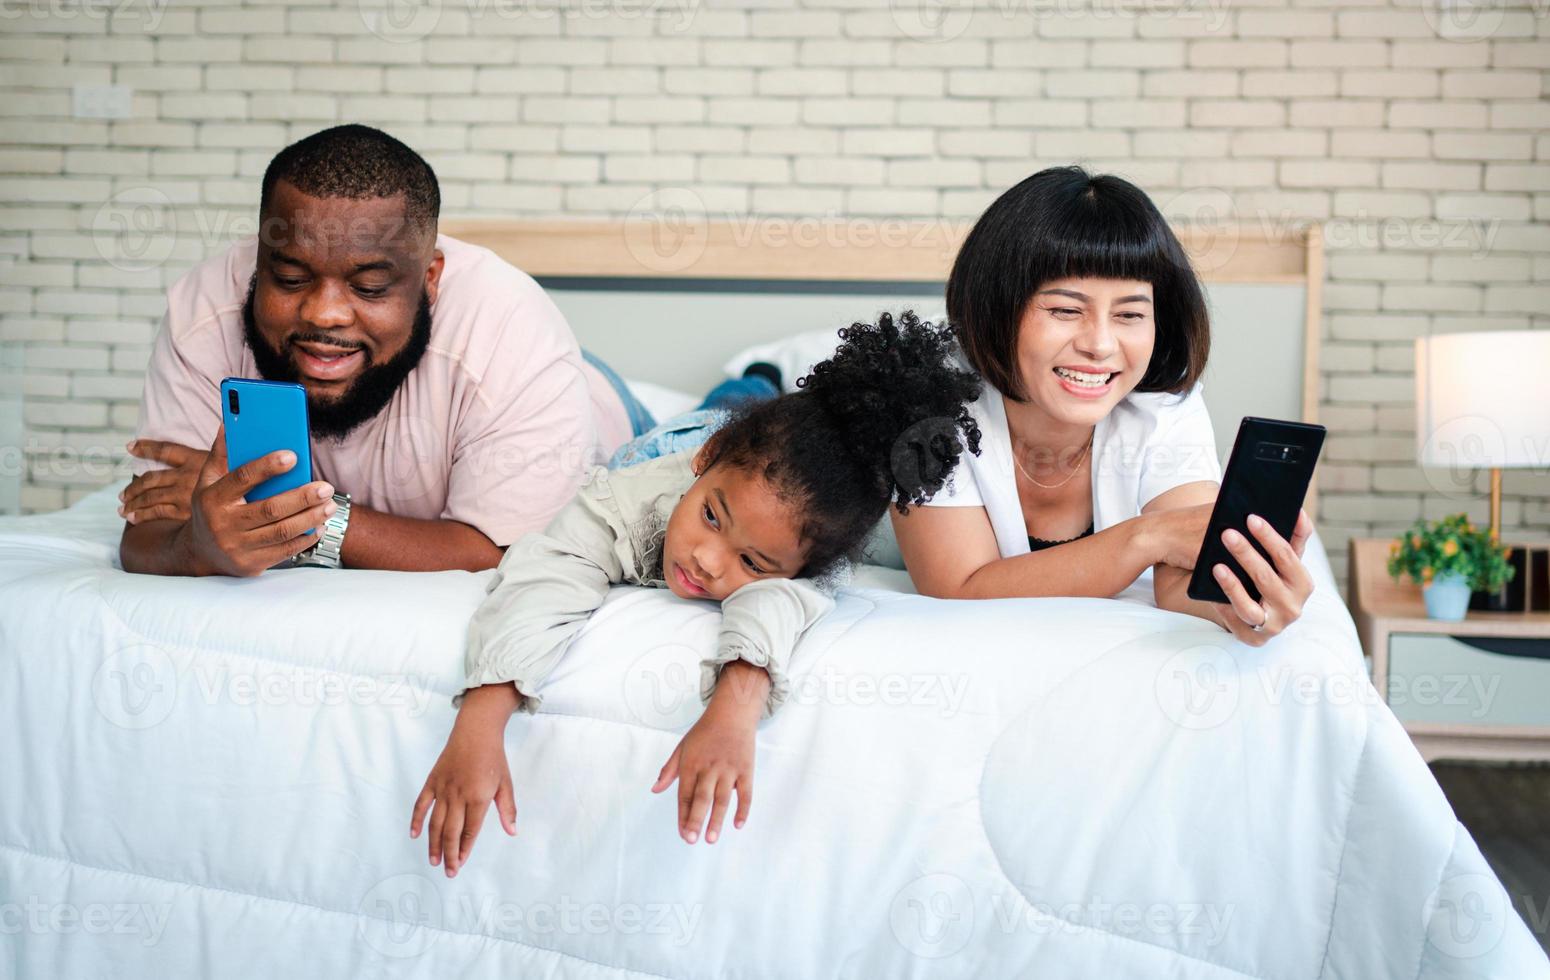 meninas afro-americanas não estão satisfeitas e tristes, sentadas no meio entre pai e mãe. os pais estão usando o smartphone e crianças abandonadas. as crianças precisam da atenção dos pais. foto